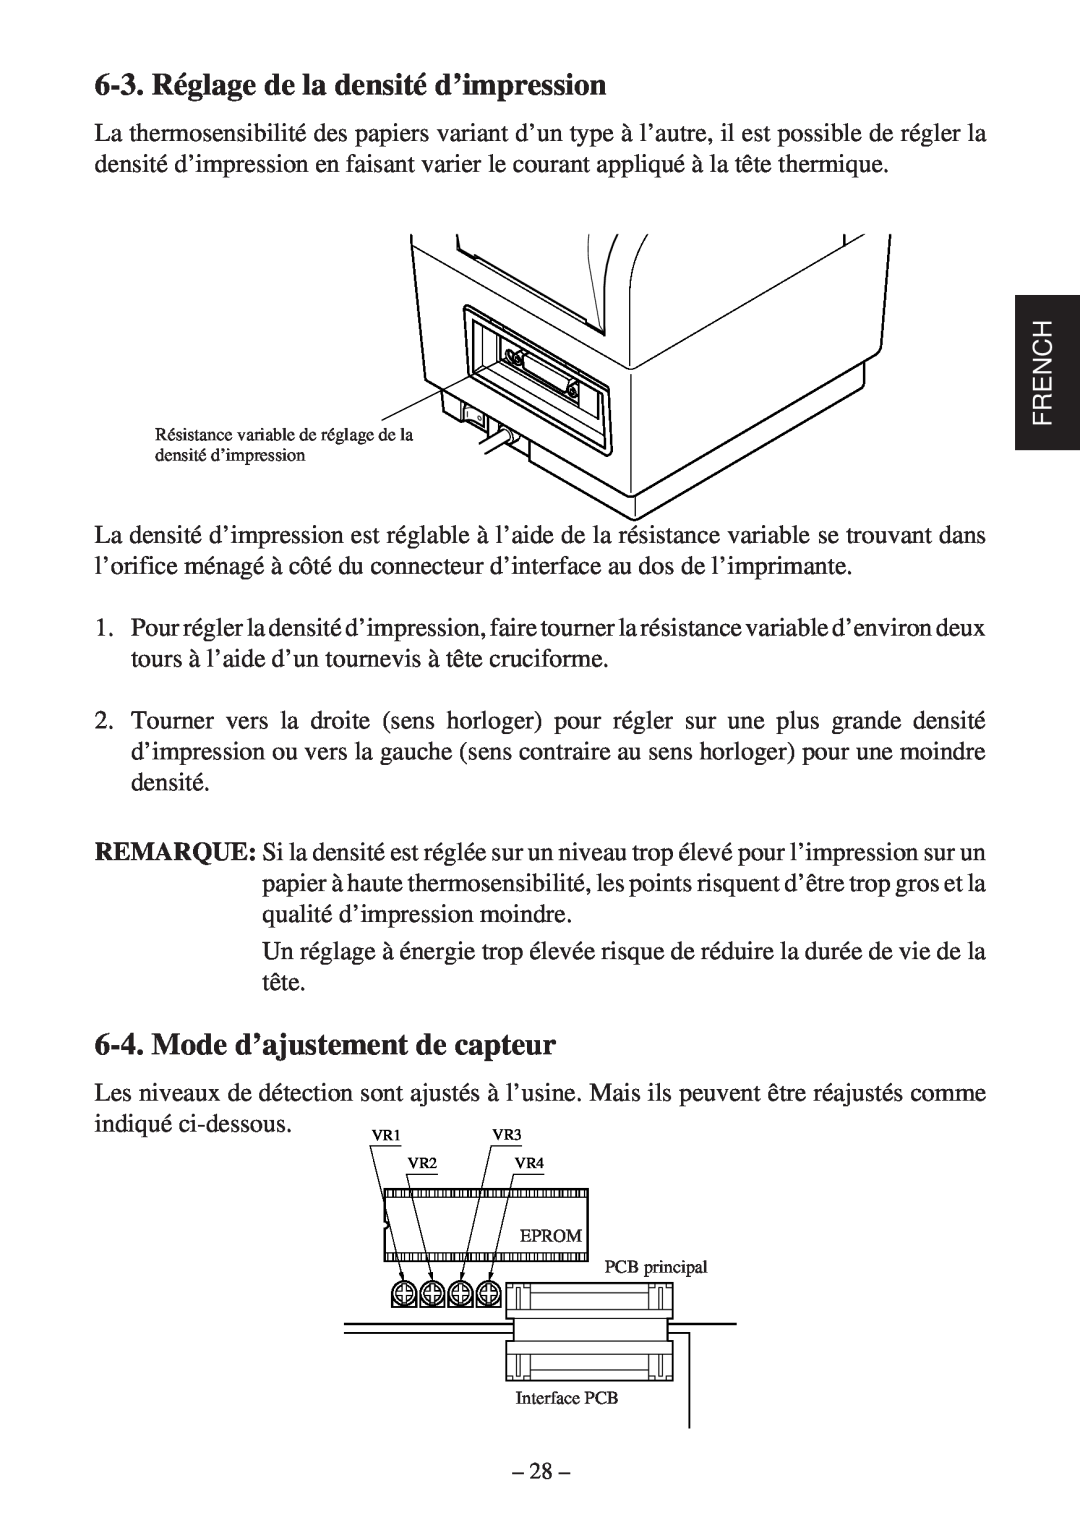 Star Micronics TSP400Z Series user manual 6-3. Réglage de la densité d’impression, Mode d’ajustement de capteur, French 